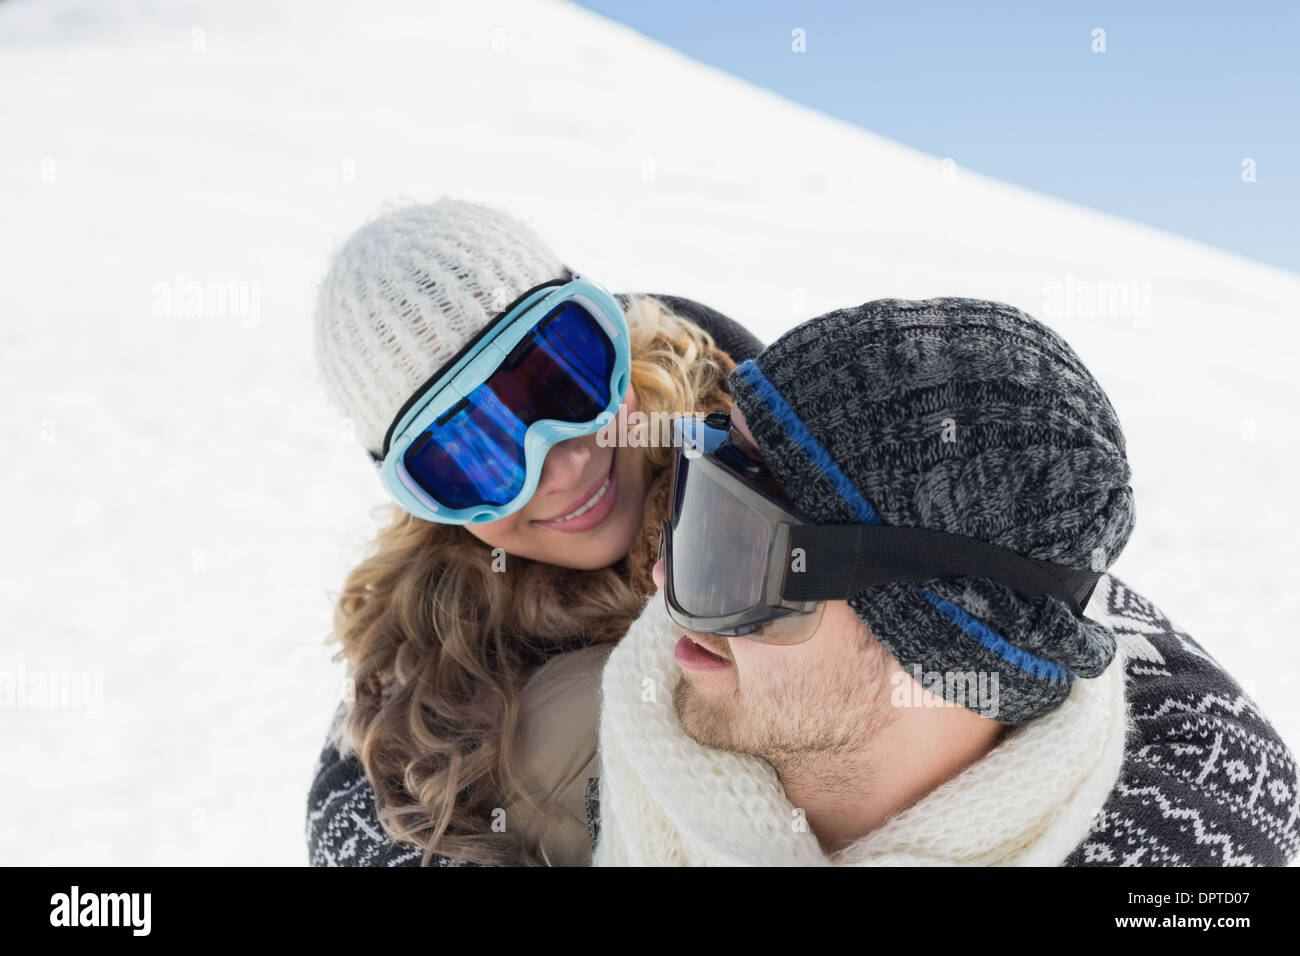 Cerca de un par de gafas de esquí contra la nieve Foto de stock